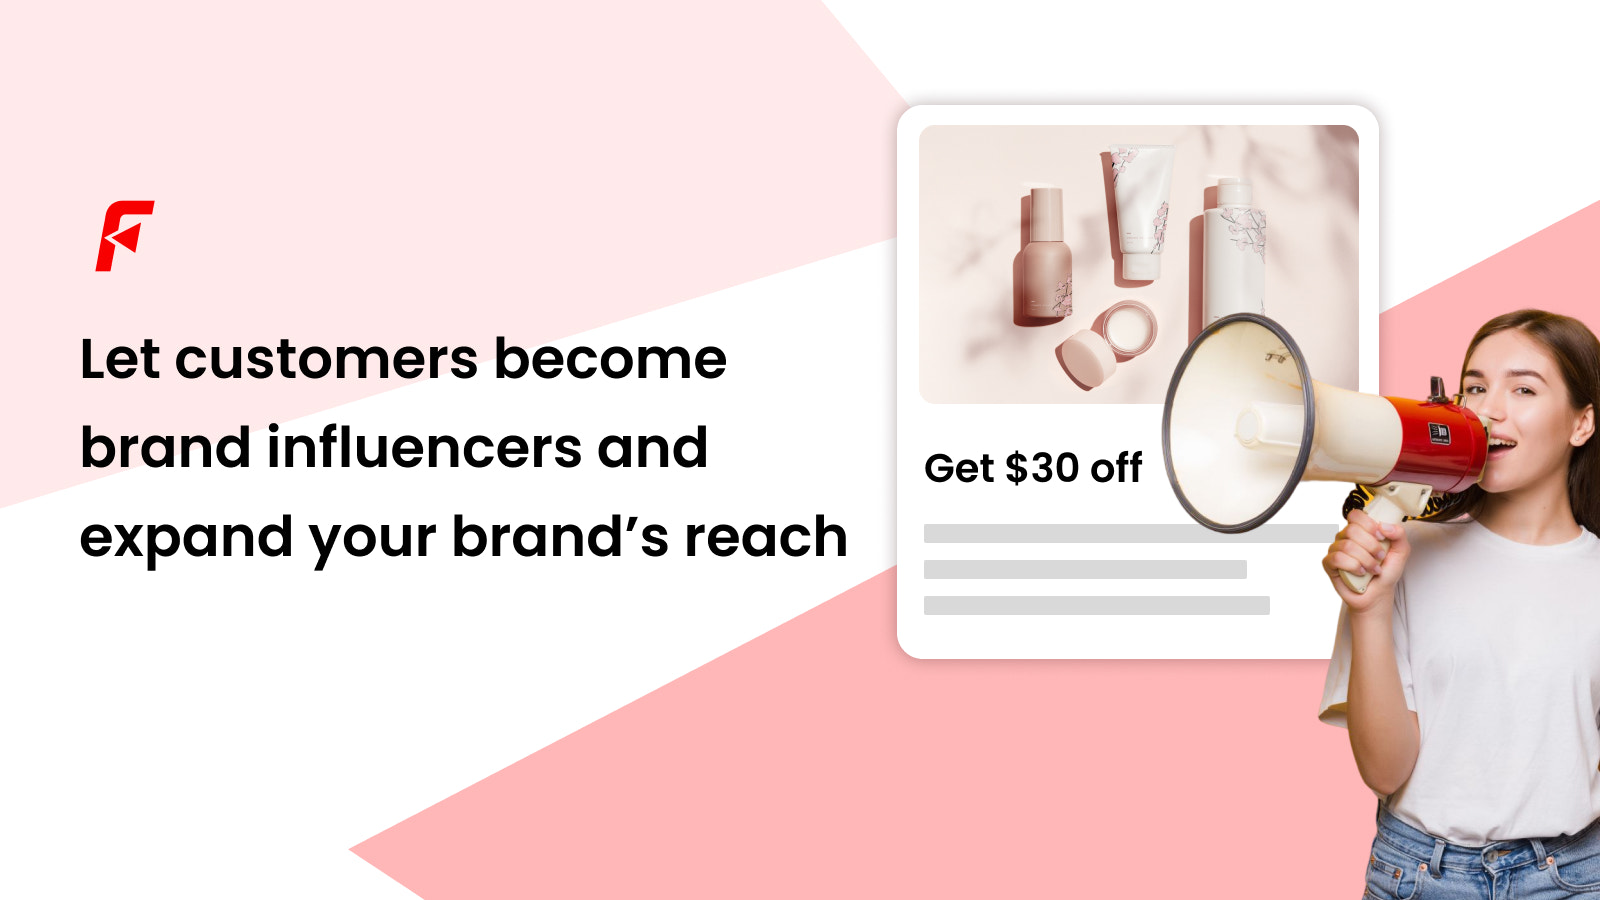 Permite que los clientes se conviertan en influencers de la marca y expandan tu marca